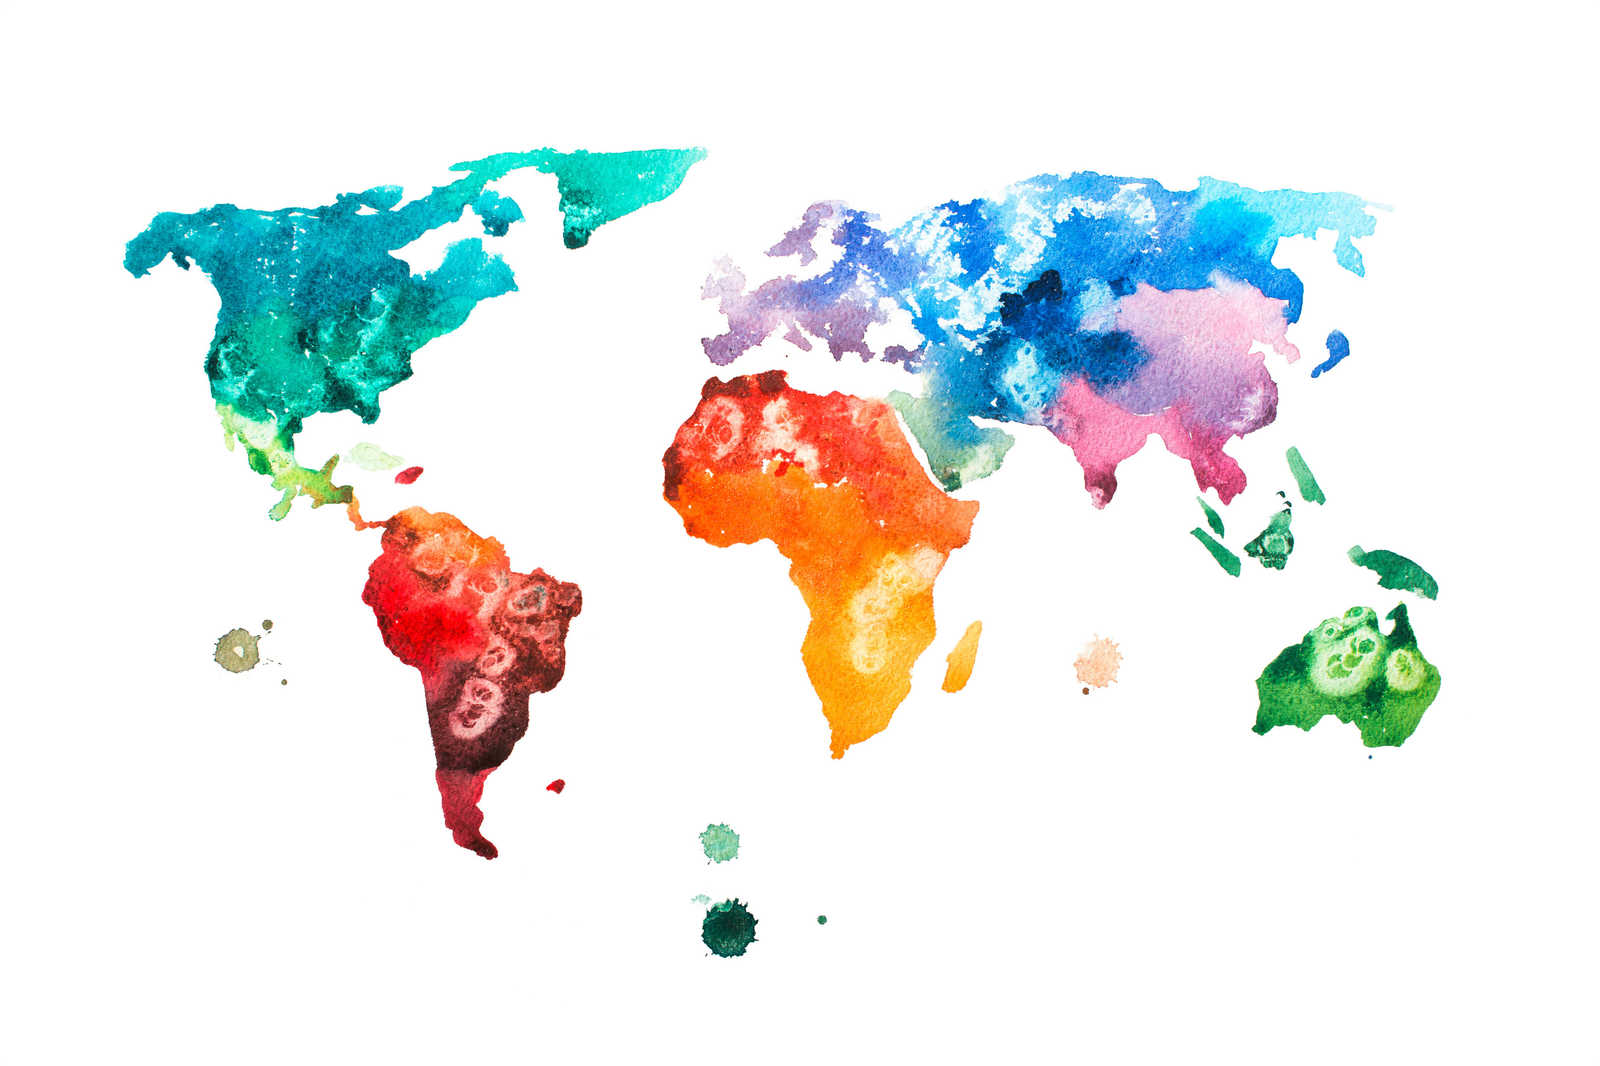             Toile carte du monde en aquarelle - 0,90 m x 0,60 m
        